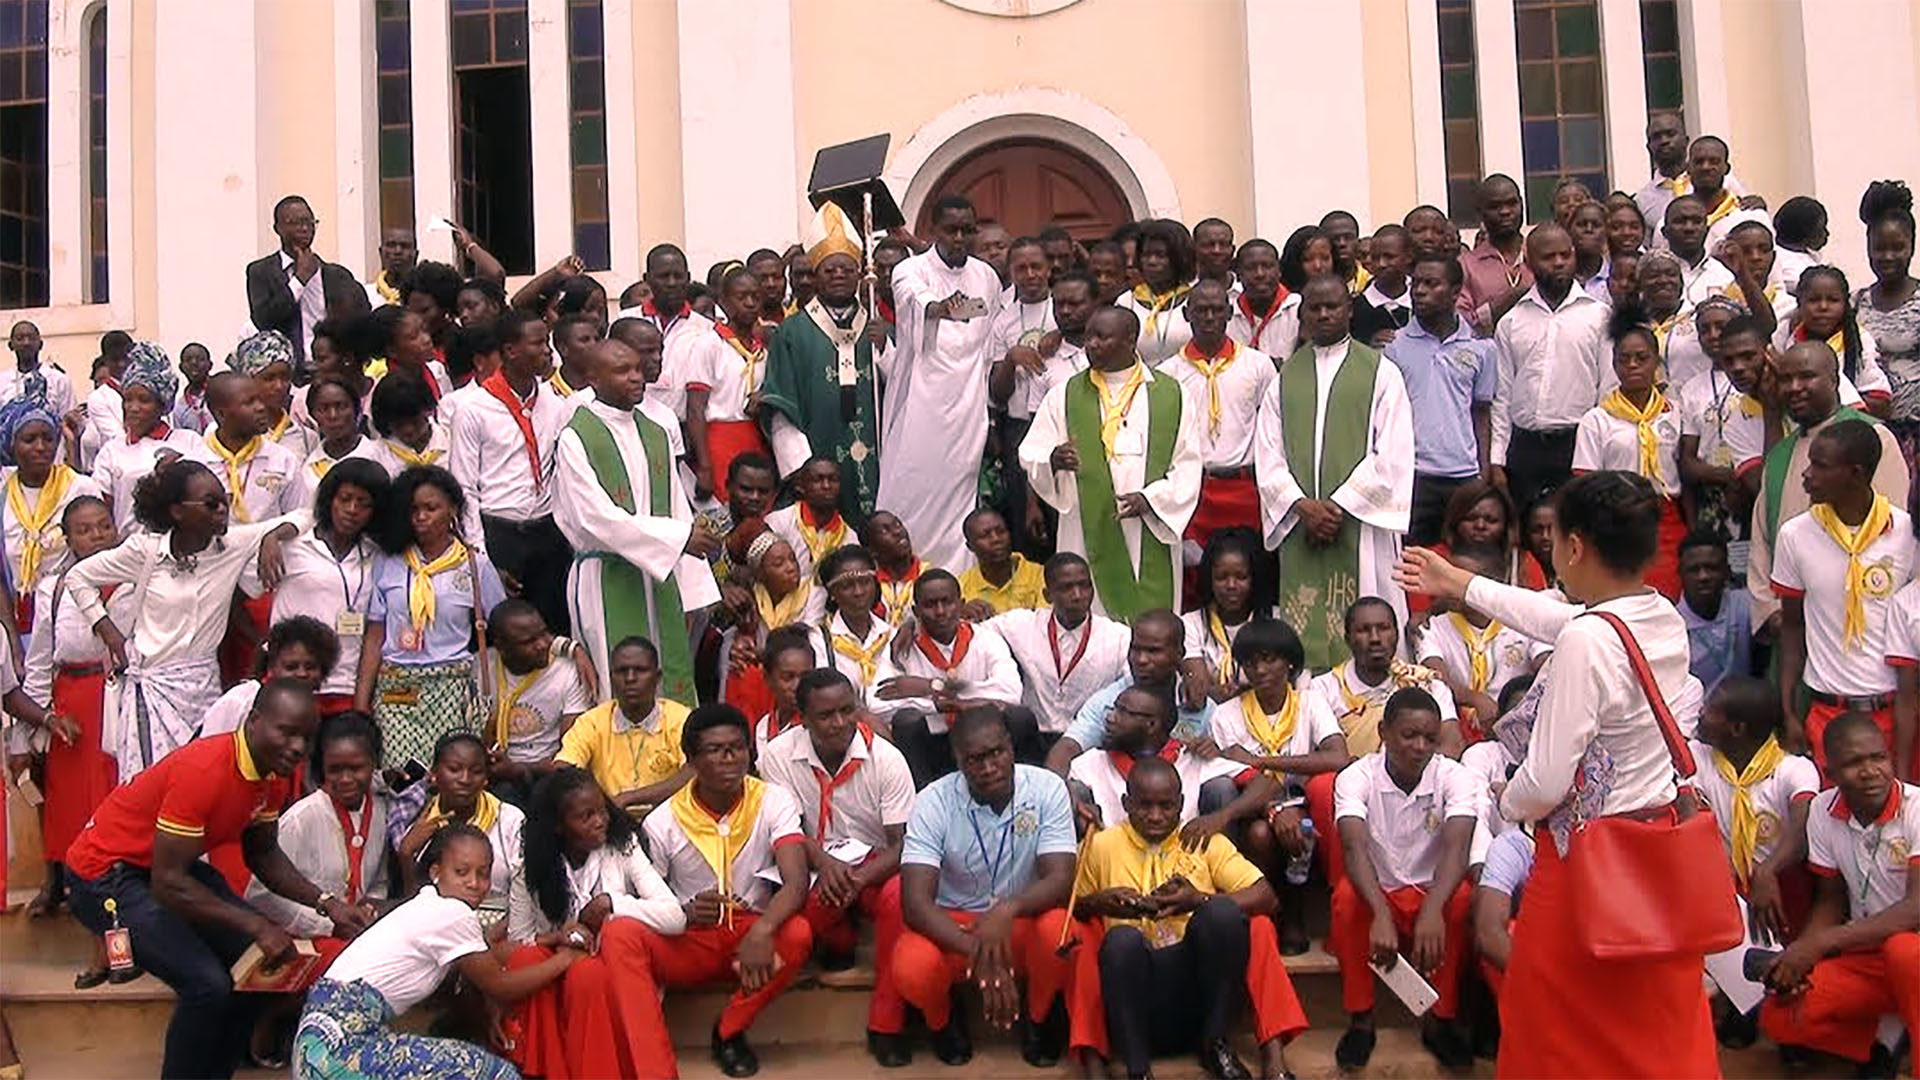 Mgr Benedeto Roberto, entouré par les prêtres et les paroissiens de Malanje, province au nord de l'Angola (Photo: apostoladoangola.org/DR)